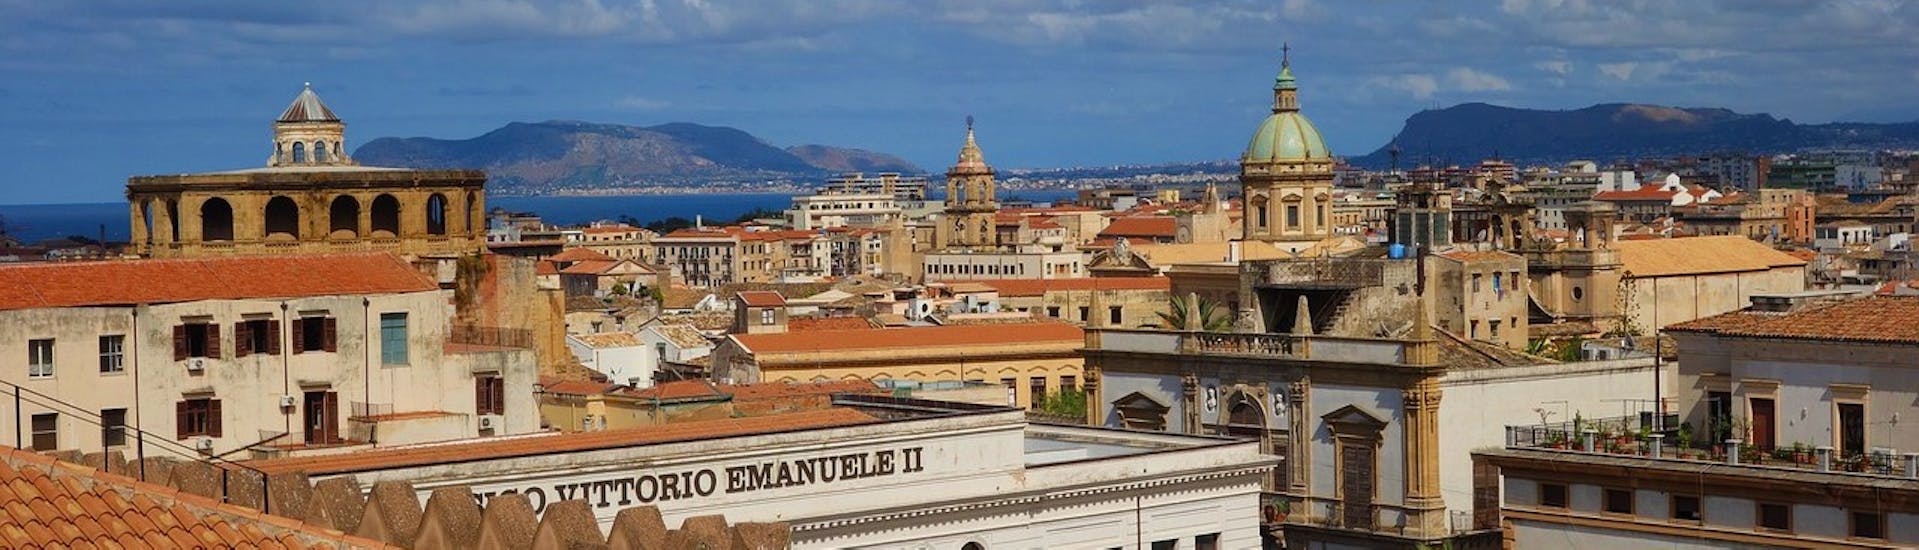 Das bezaubernde Panorama von Palermo von oben während einer privaten Yachttour von Cefalù nach Palermo mit einer Fahrt in einer Ape Calessino und einem Mittagessen mit Margy Charter.